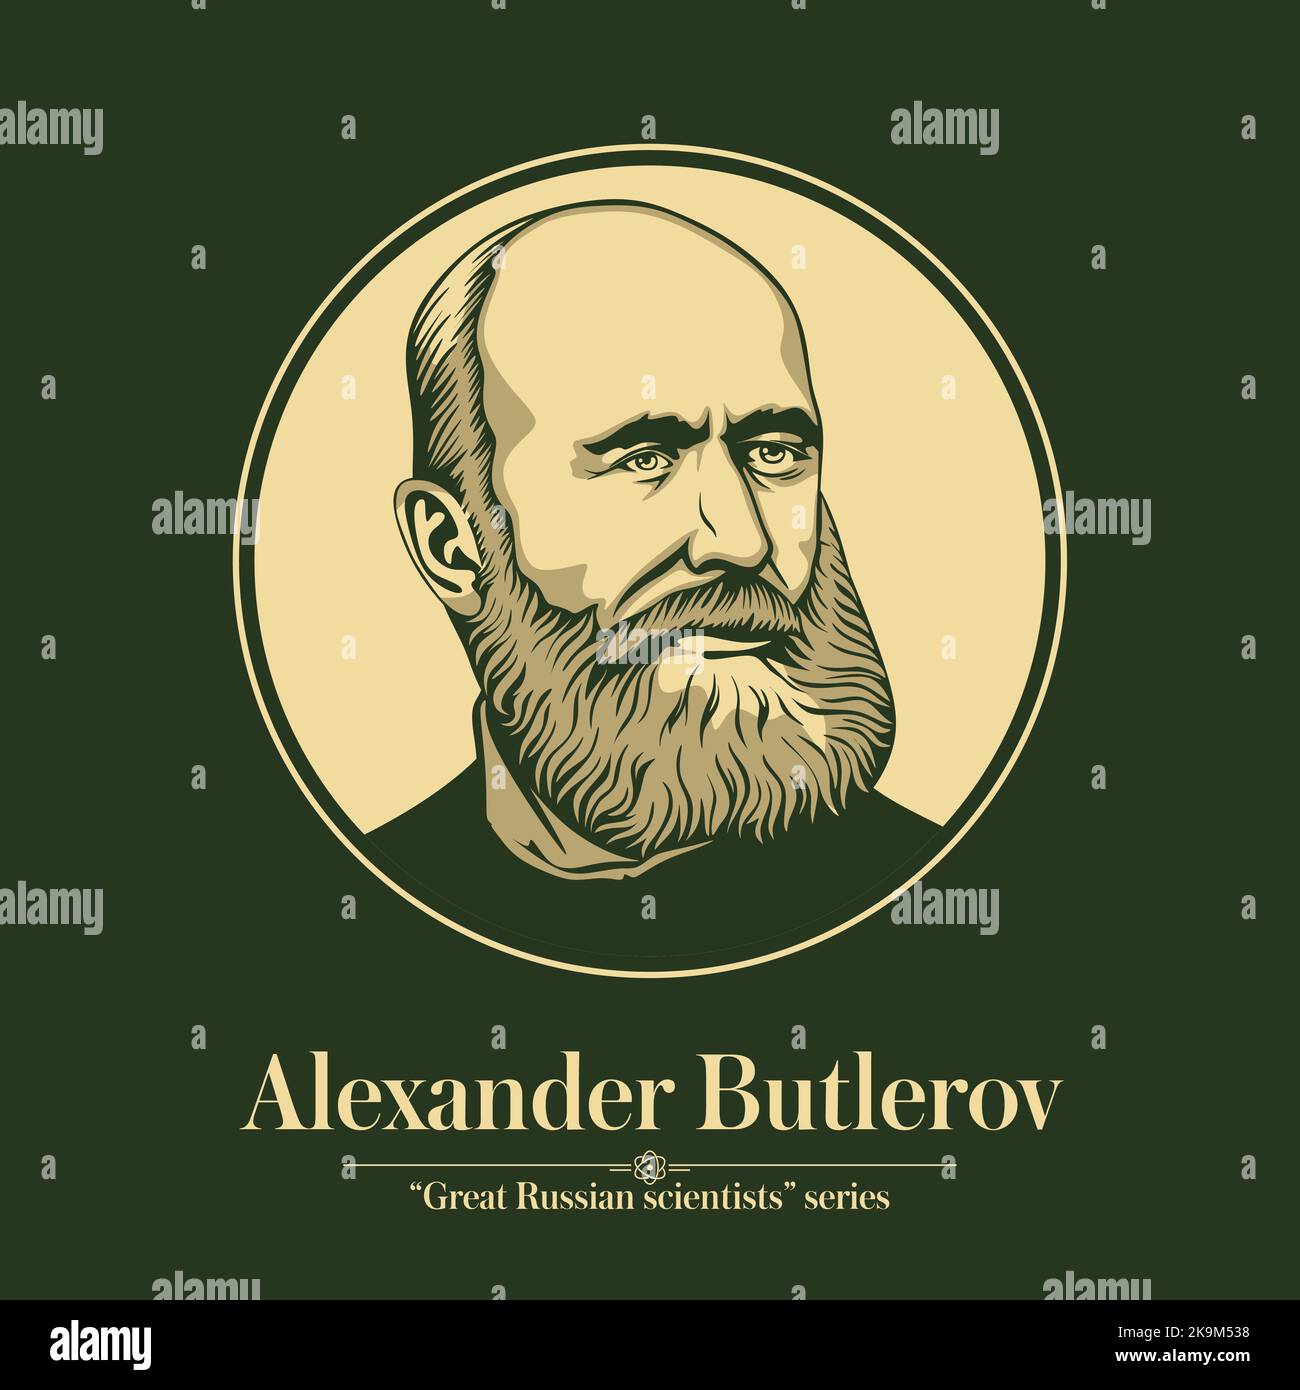 La série des grands scientifiques russes. Alexander Butlerov était un chimiste russe, l'un des principaux créateurs de la théorie de la structure chimique Illustration de Vecteur